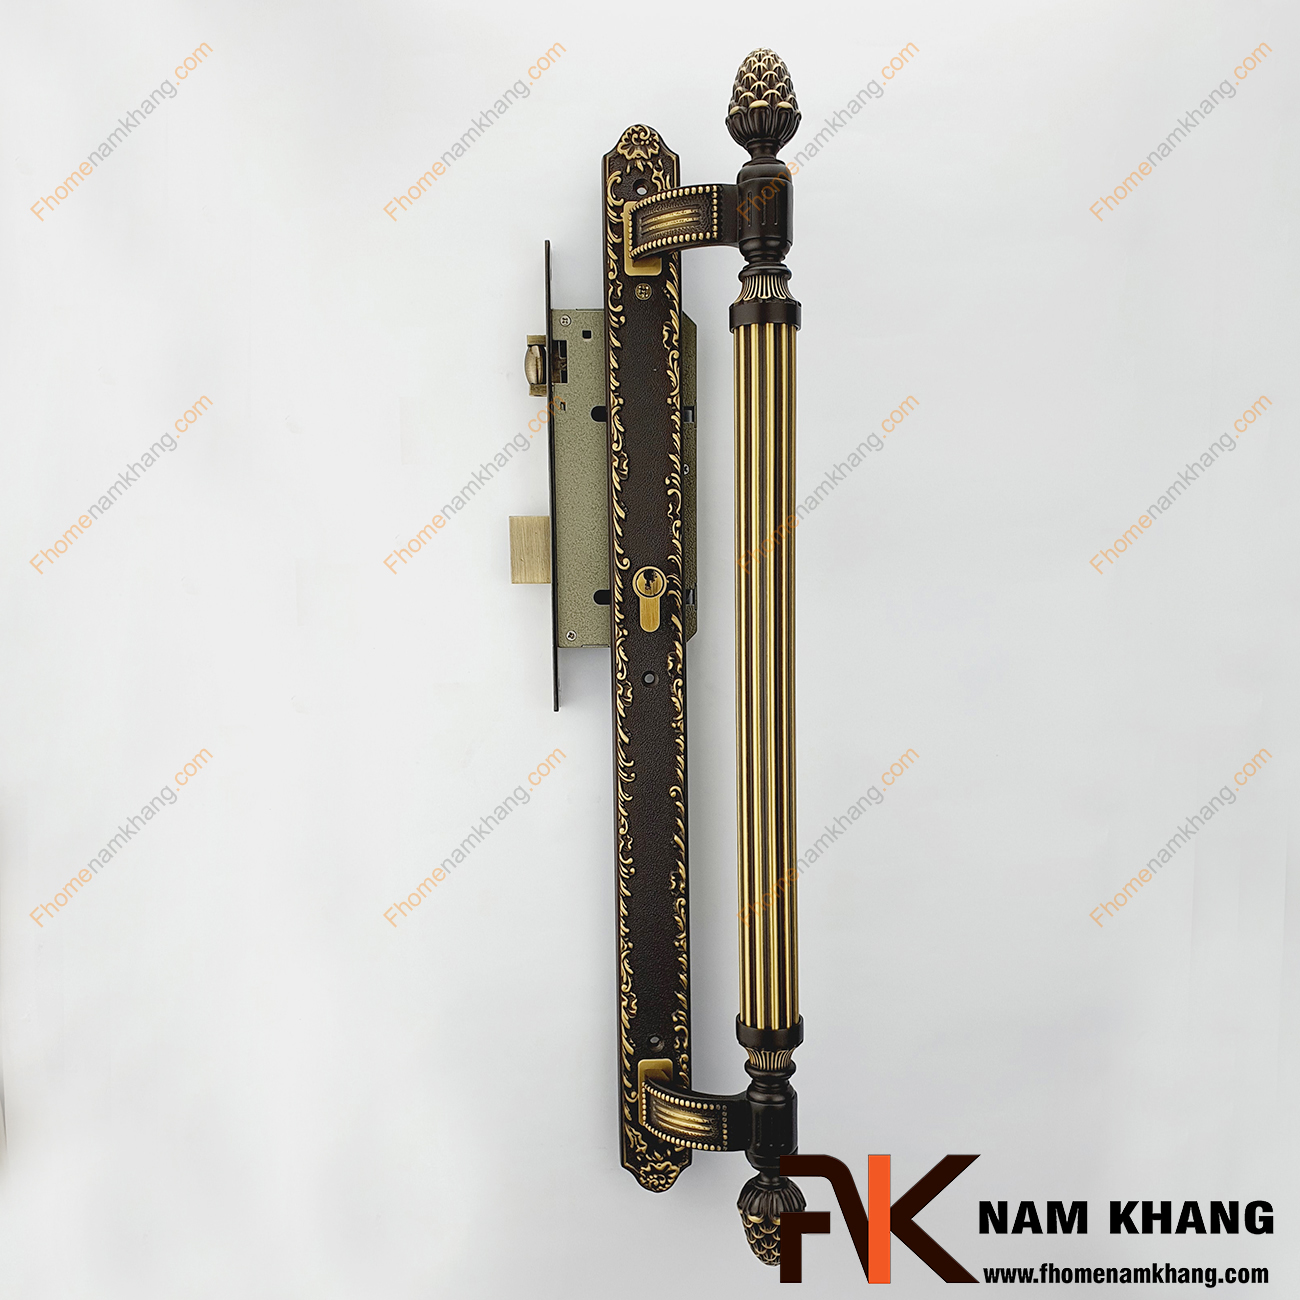 Khóa cửa sảnh phối hợp cổ điển màu đồng rêu NK362K-60BCF là dạng khóa cửa phối hợp đặc trưng khi kết hợp dòng khóa thân liền và tay nắm cửa sảnh lớn